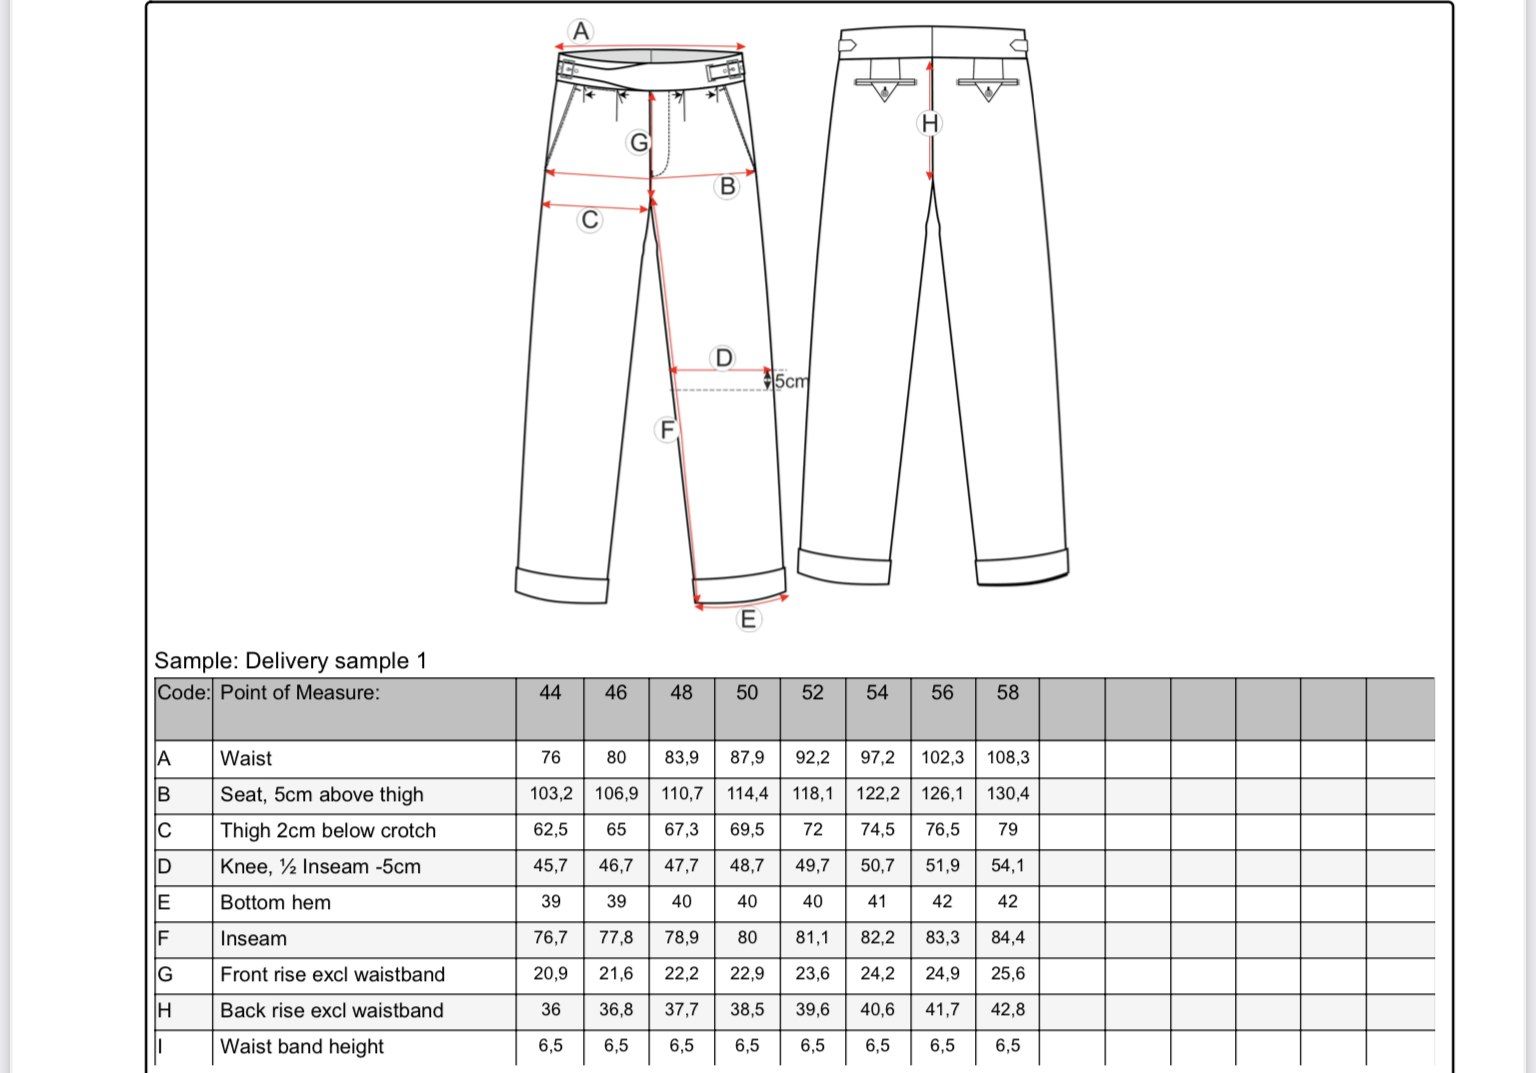 Solid Ghurka Wool Trousers - Beige (48 left)